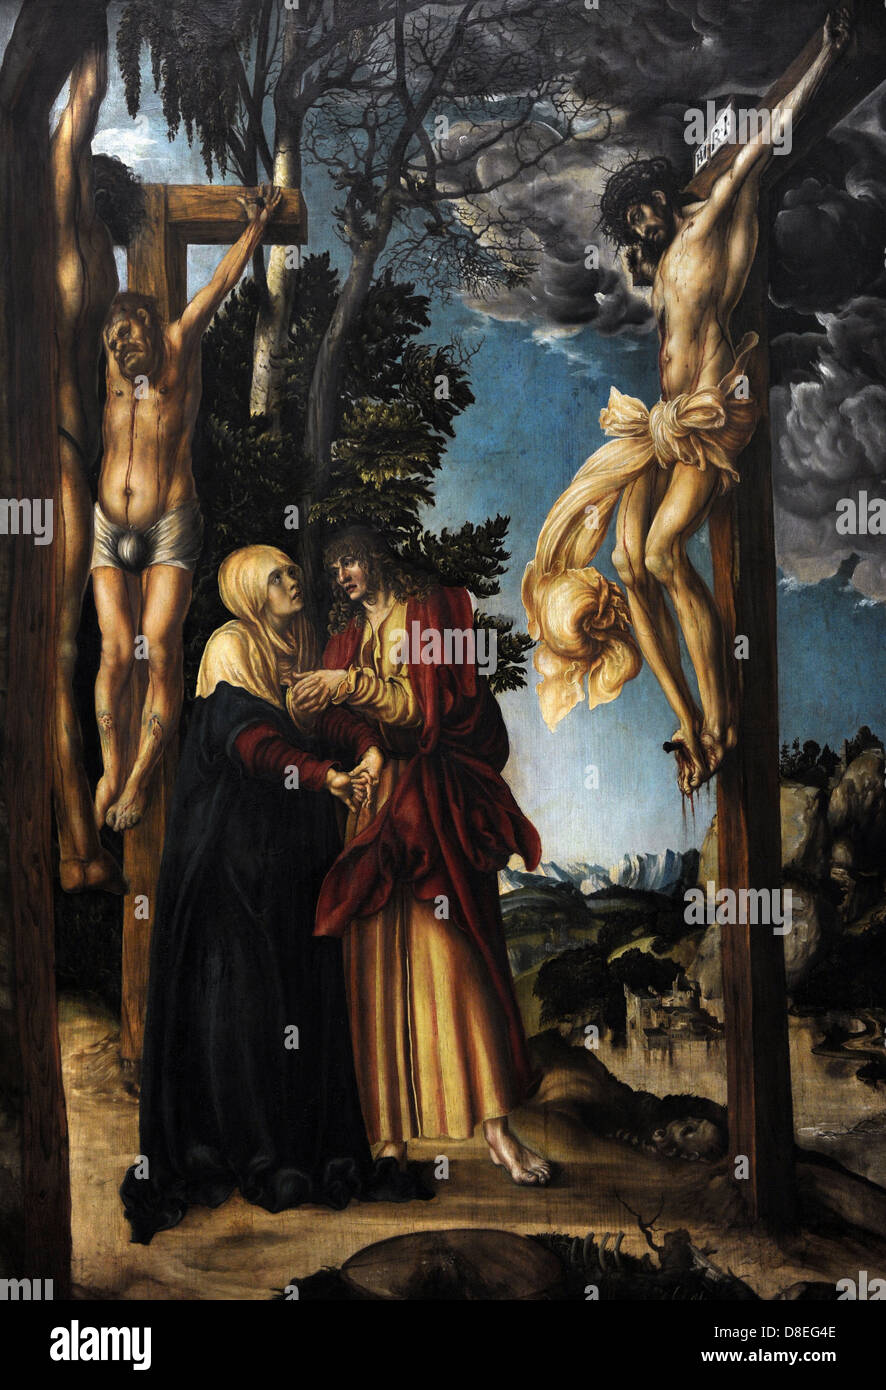 Lucas Cranach il Vecchio (1472 - 1553). Artista del Rinascimento tedesco. La crocifissione. 1503. Alte Pinakothek. Monaco di Baviera. Germania. Foto Stock